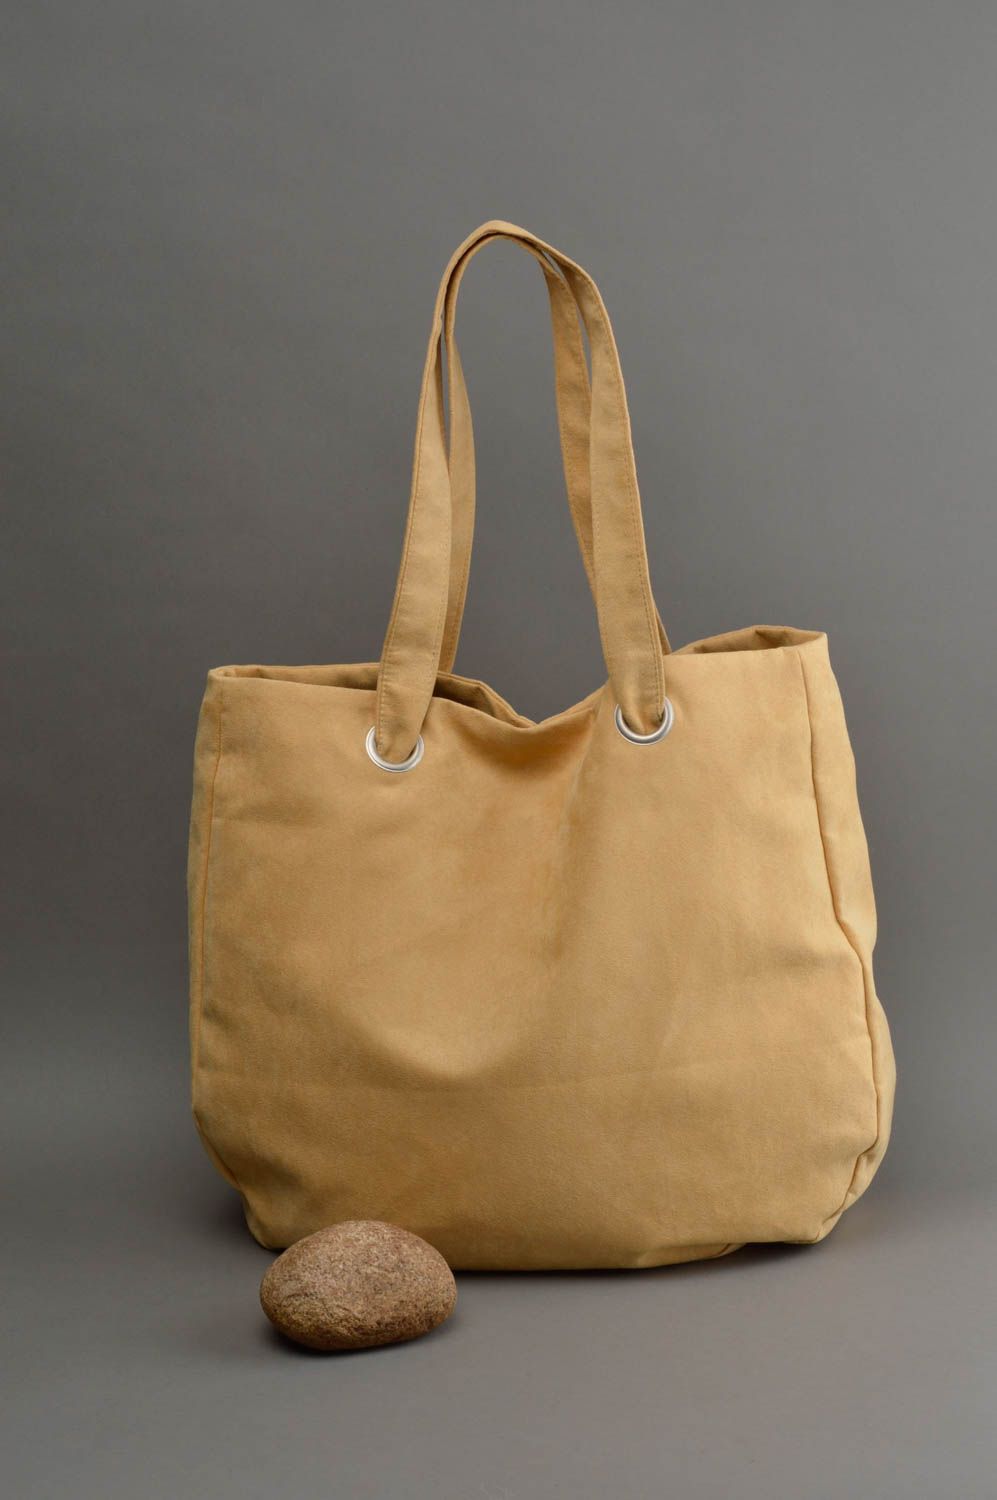 Вместительная женская сумка из ткани бежевая с двумя ручками аксессуар хенд мейд фото 1